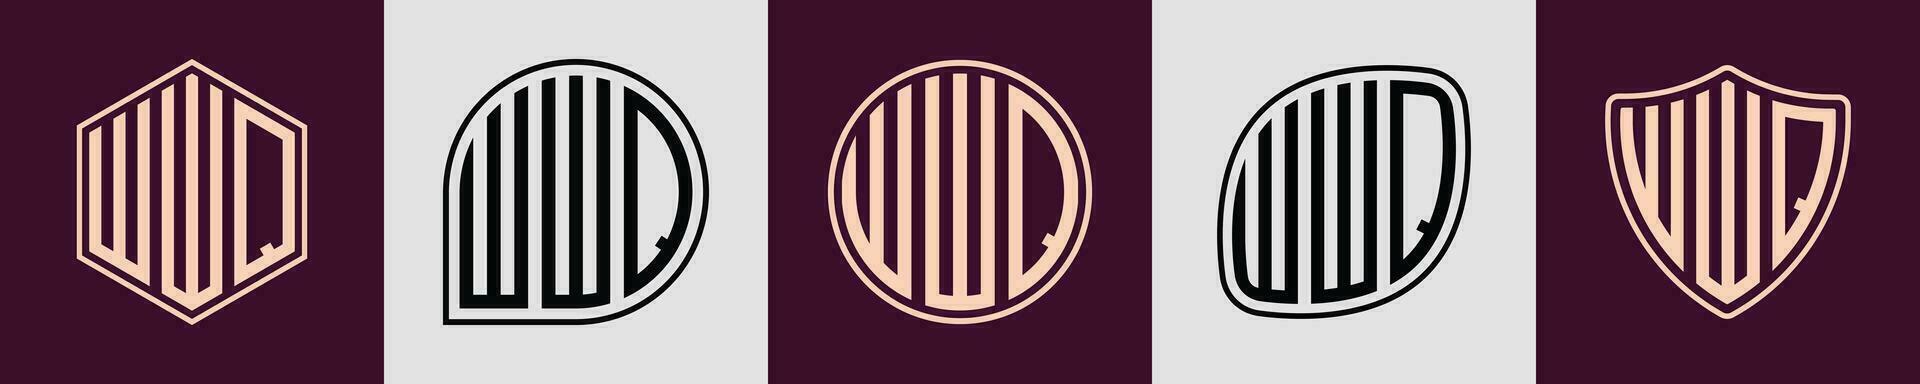 creativo semplice iniziale monogramma wwq logo disegni. vettore